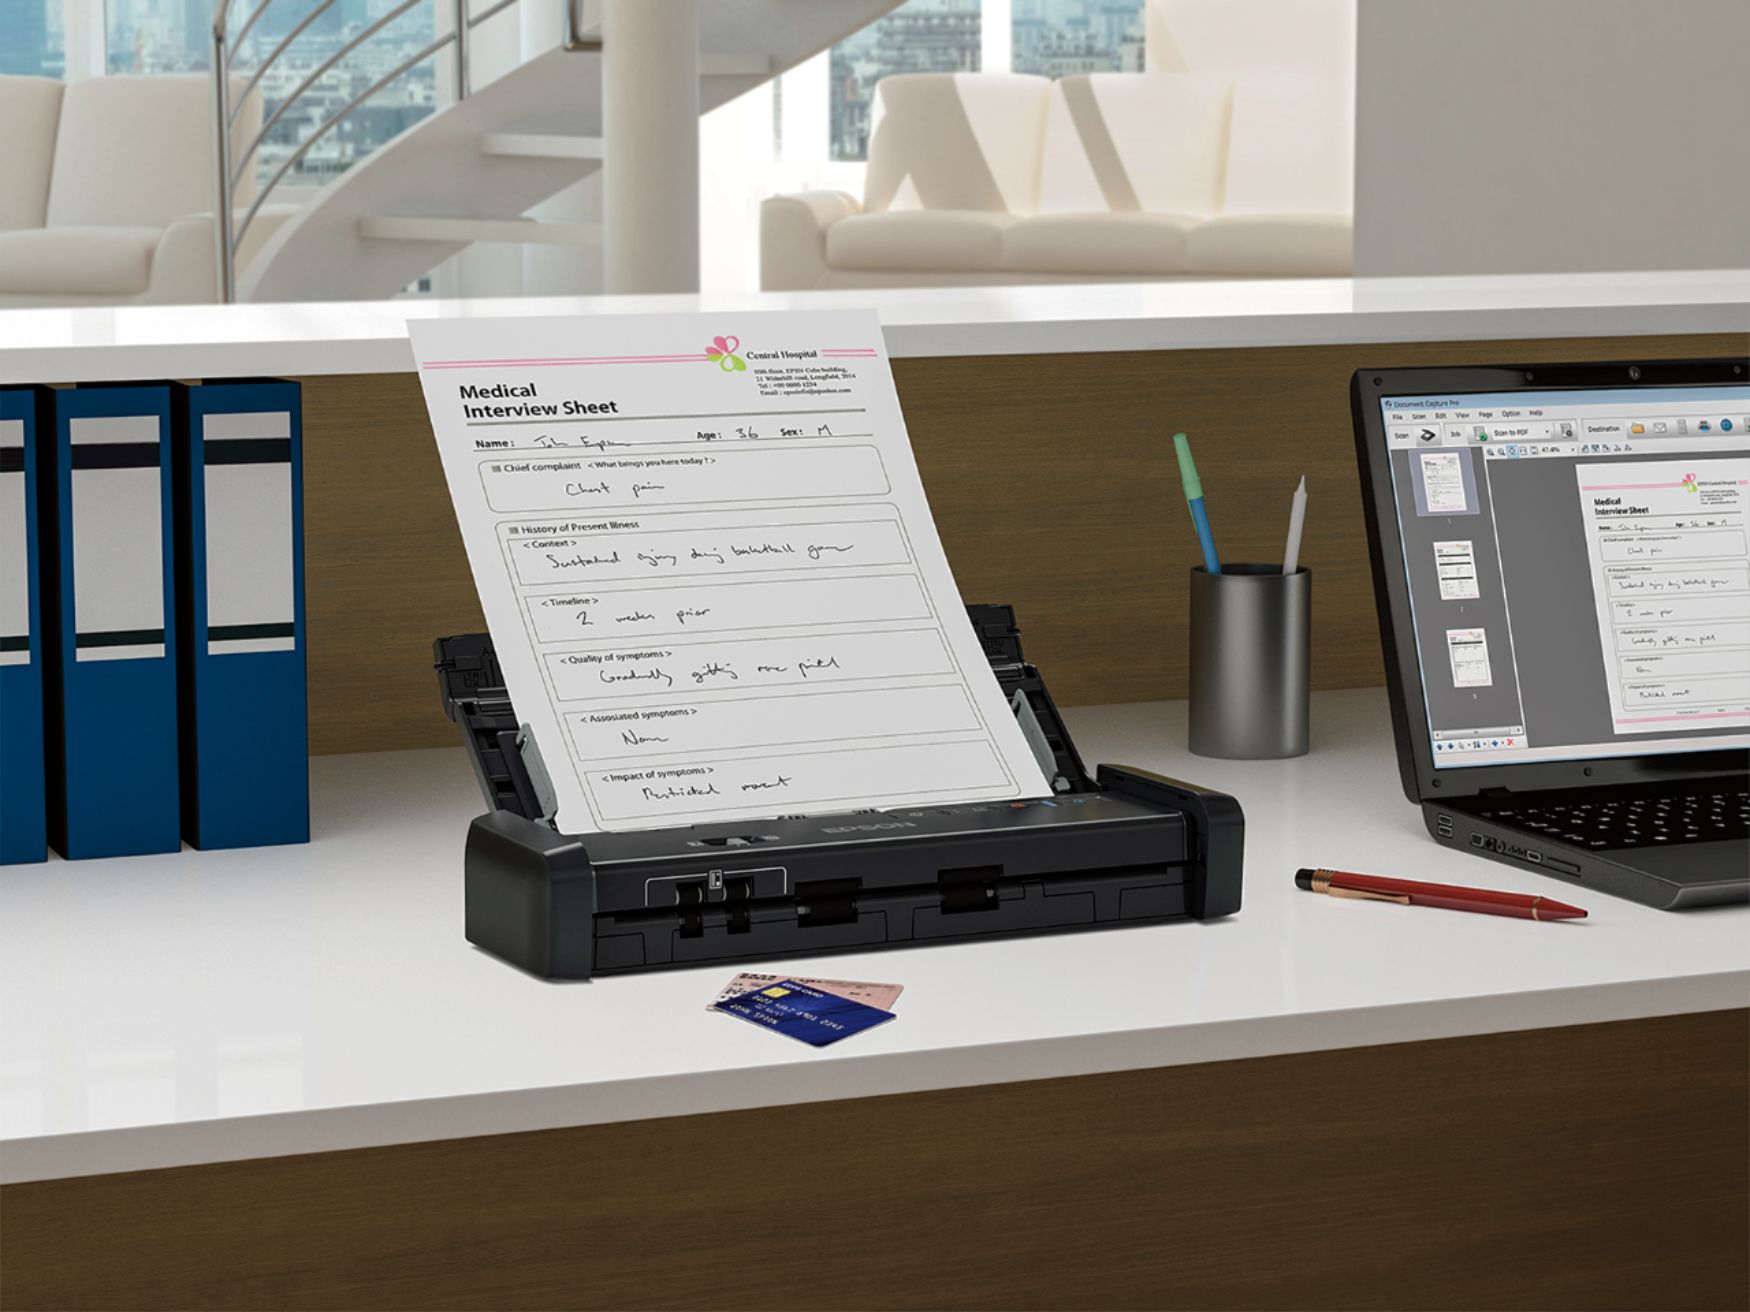 WorkForce ES-200 Portable Duplex Document Scanner with ADF